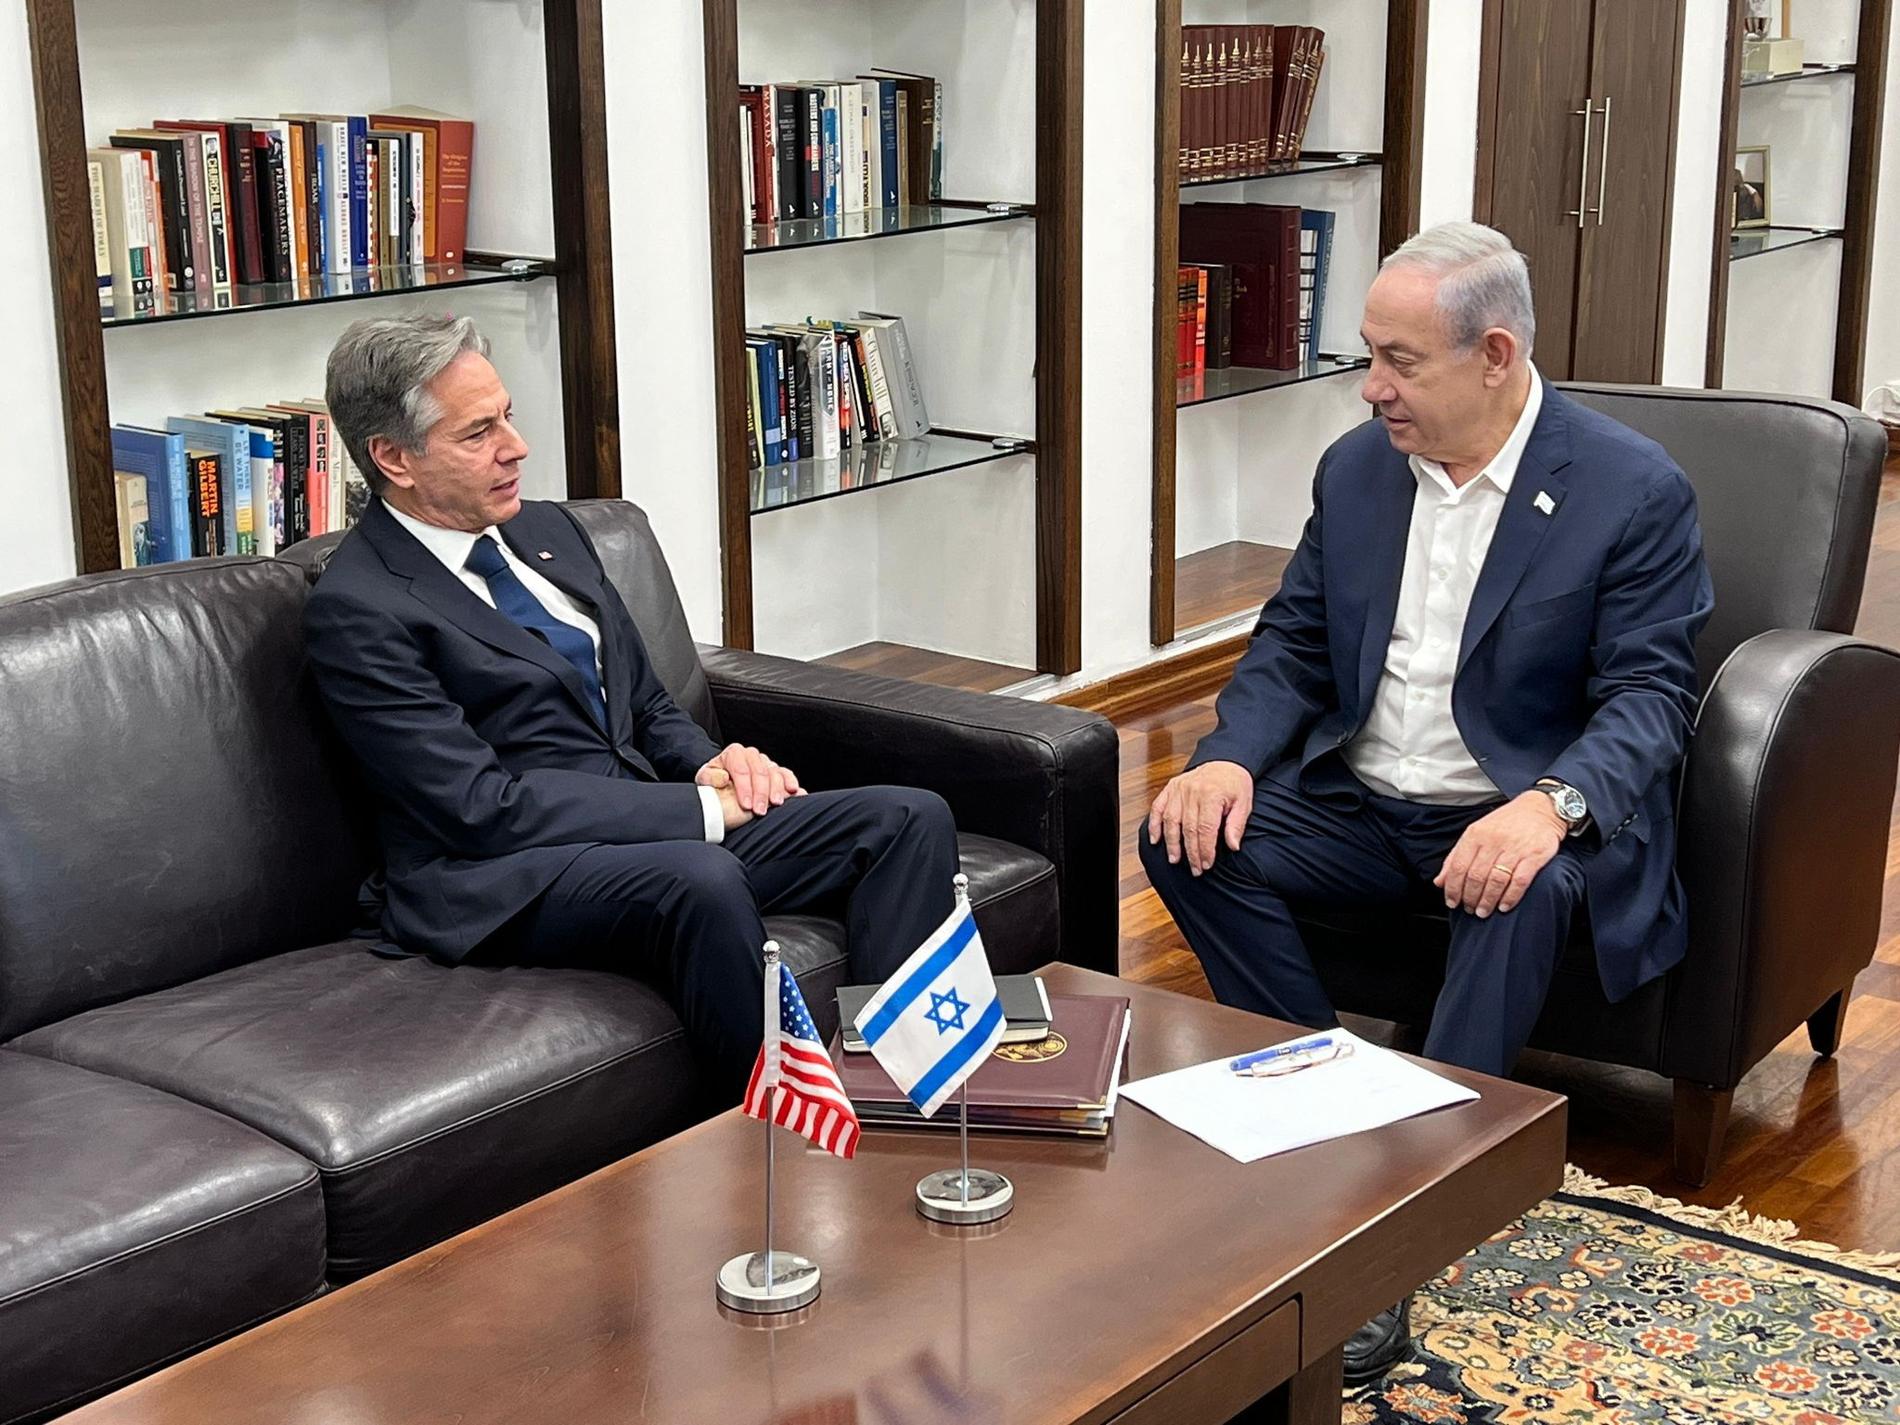 Meeting: US Secretary of State Anthony Blinken and Israeli Prime Minister Benjamin Netanyahu met on Friday in Tel Aviv.